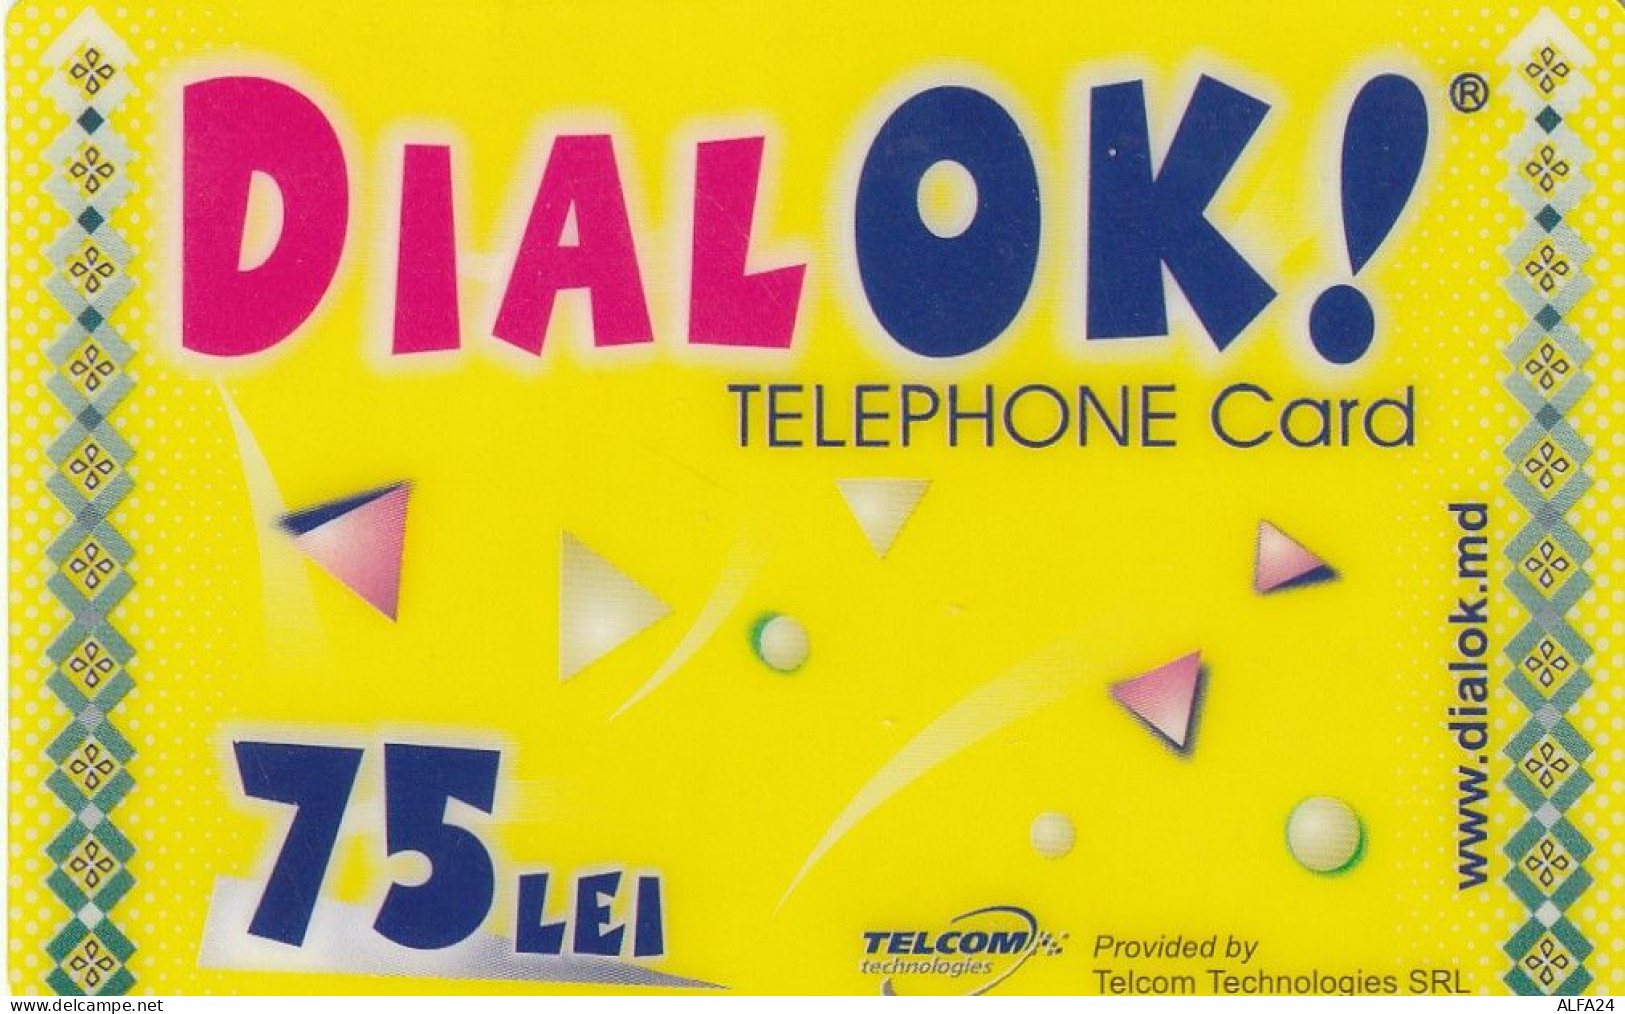 PREPAID PHONE CARD MOLDAVIA  (CV374 - Moldavië